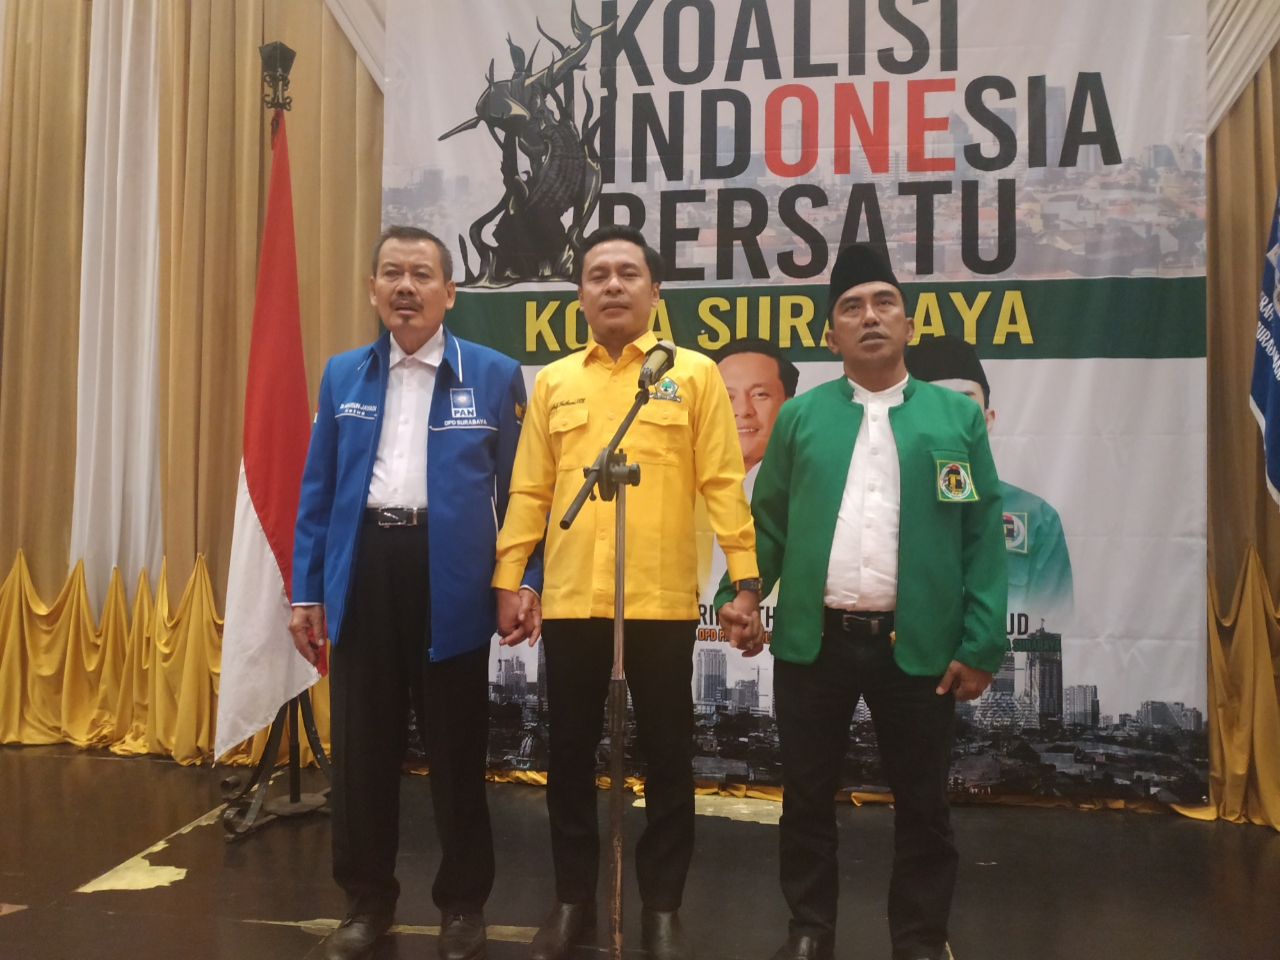 Tiga Parpol Surabaya Komitmen Membangun Koalisi Indonesia Bersatu